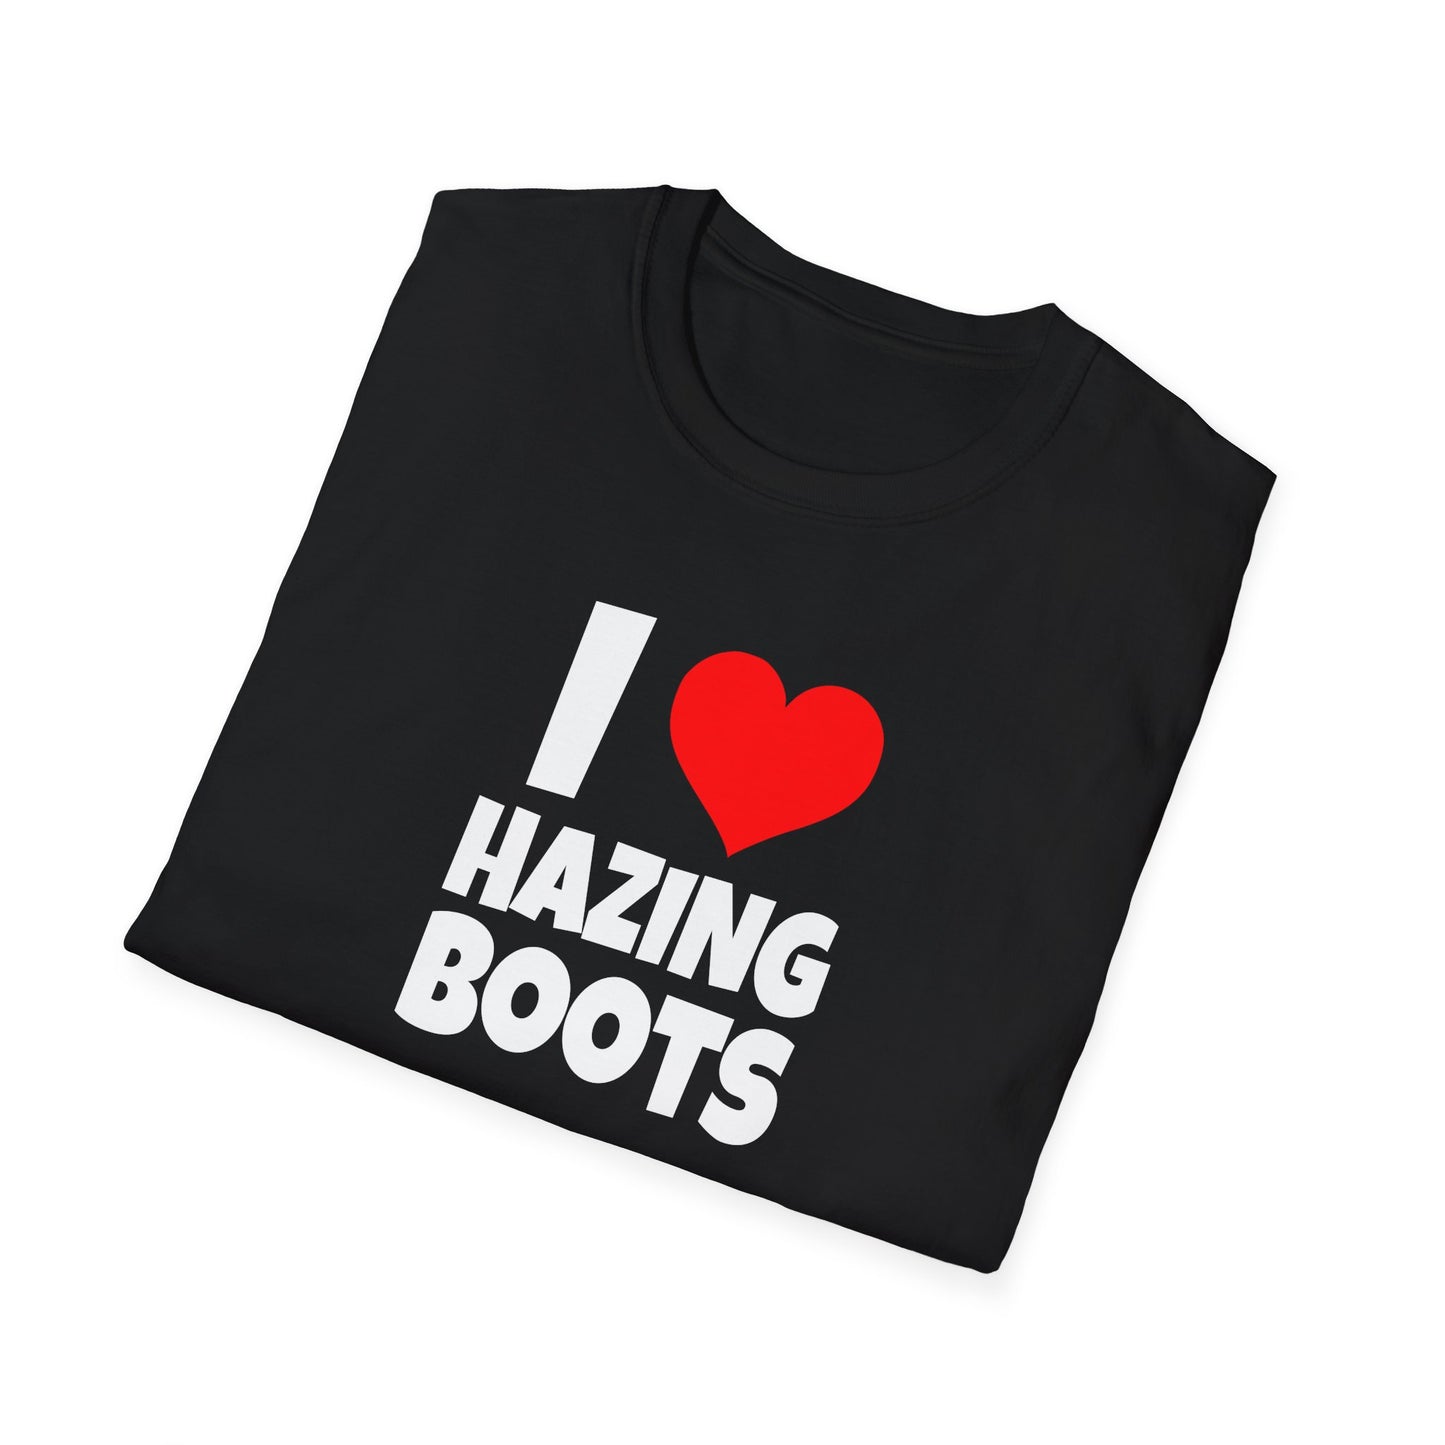 I Love Hazing Boots - T-Shirt